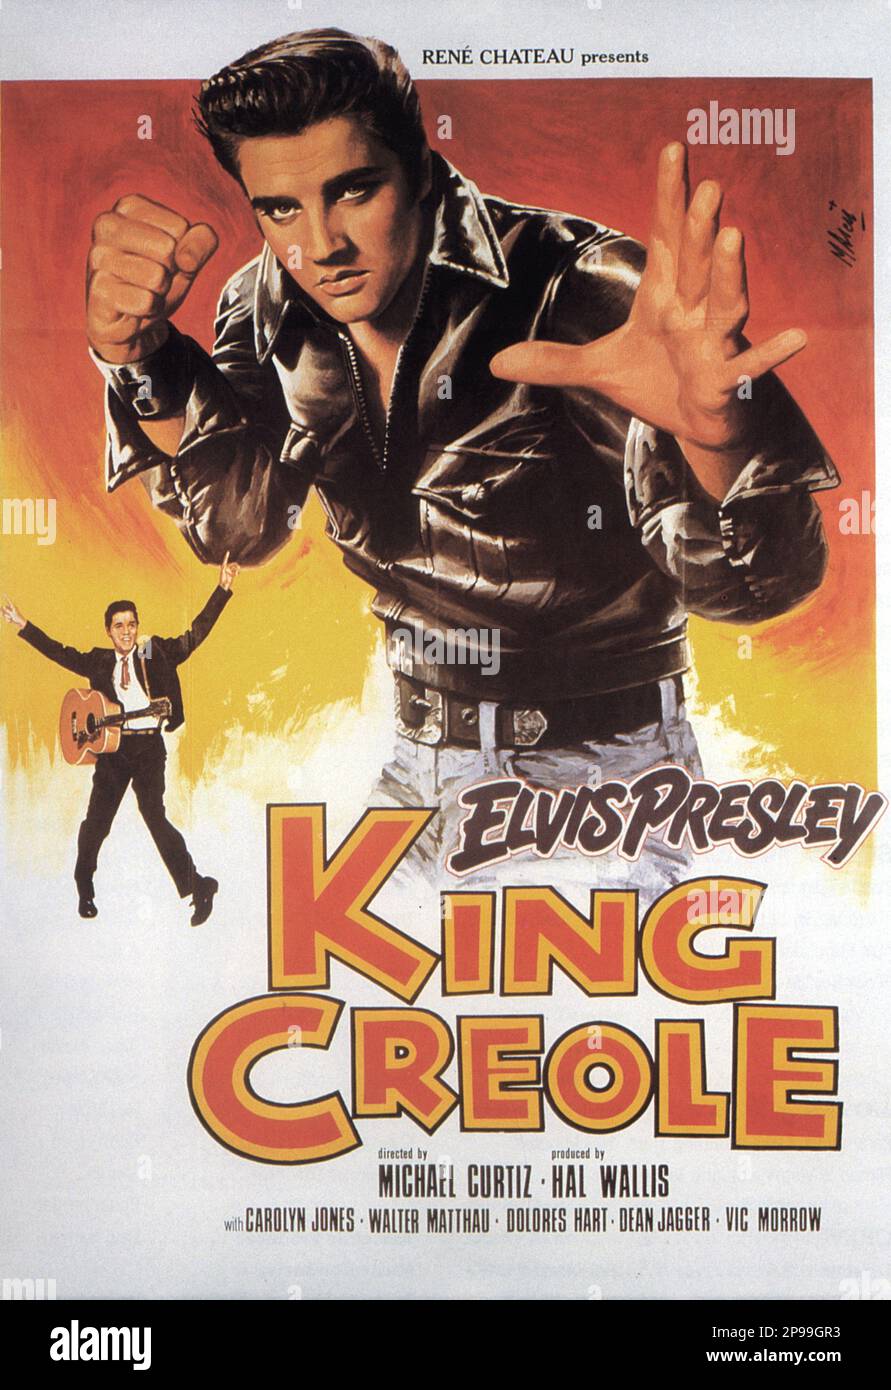 1958 : das Werbetoster für den Film KING CREOLE von Michael Curtiz mit ELVIS PRESLEY - FILM - KINO - Poster pubblicitario - Poster - Werbung - locandina - JEANS --- Archivio GBB Stockfoto